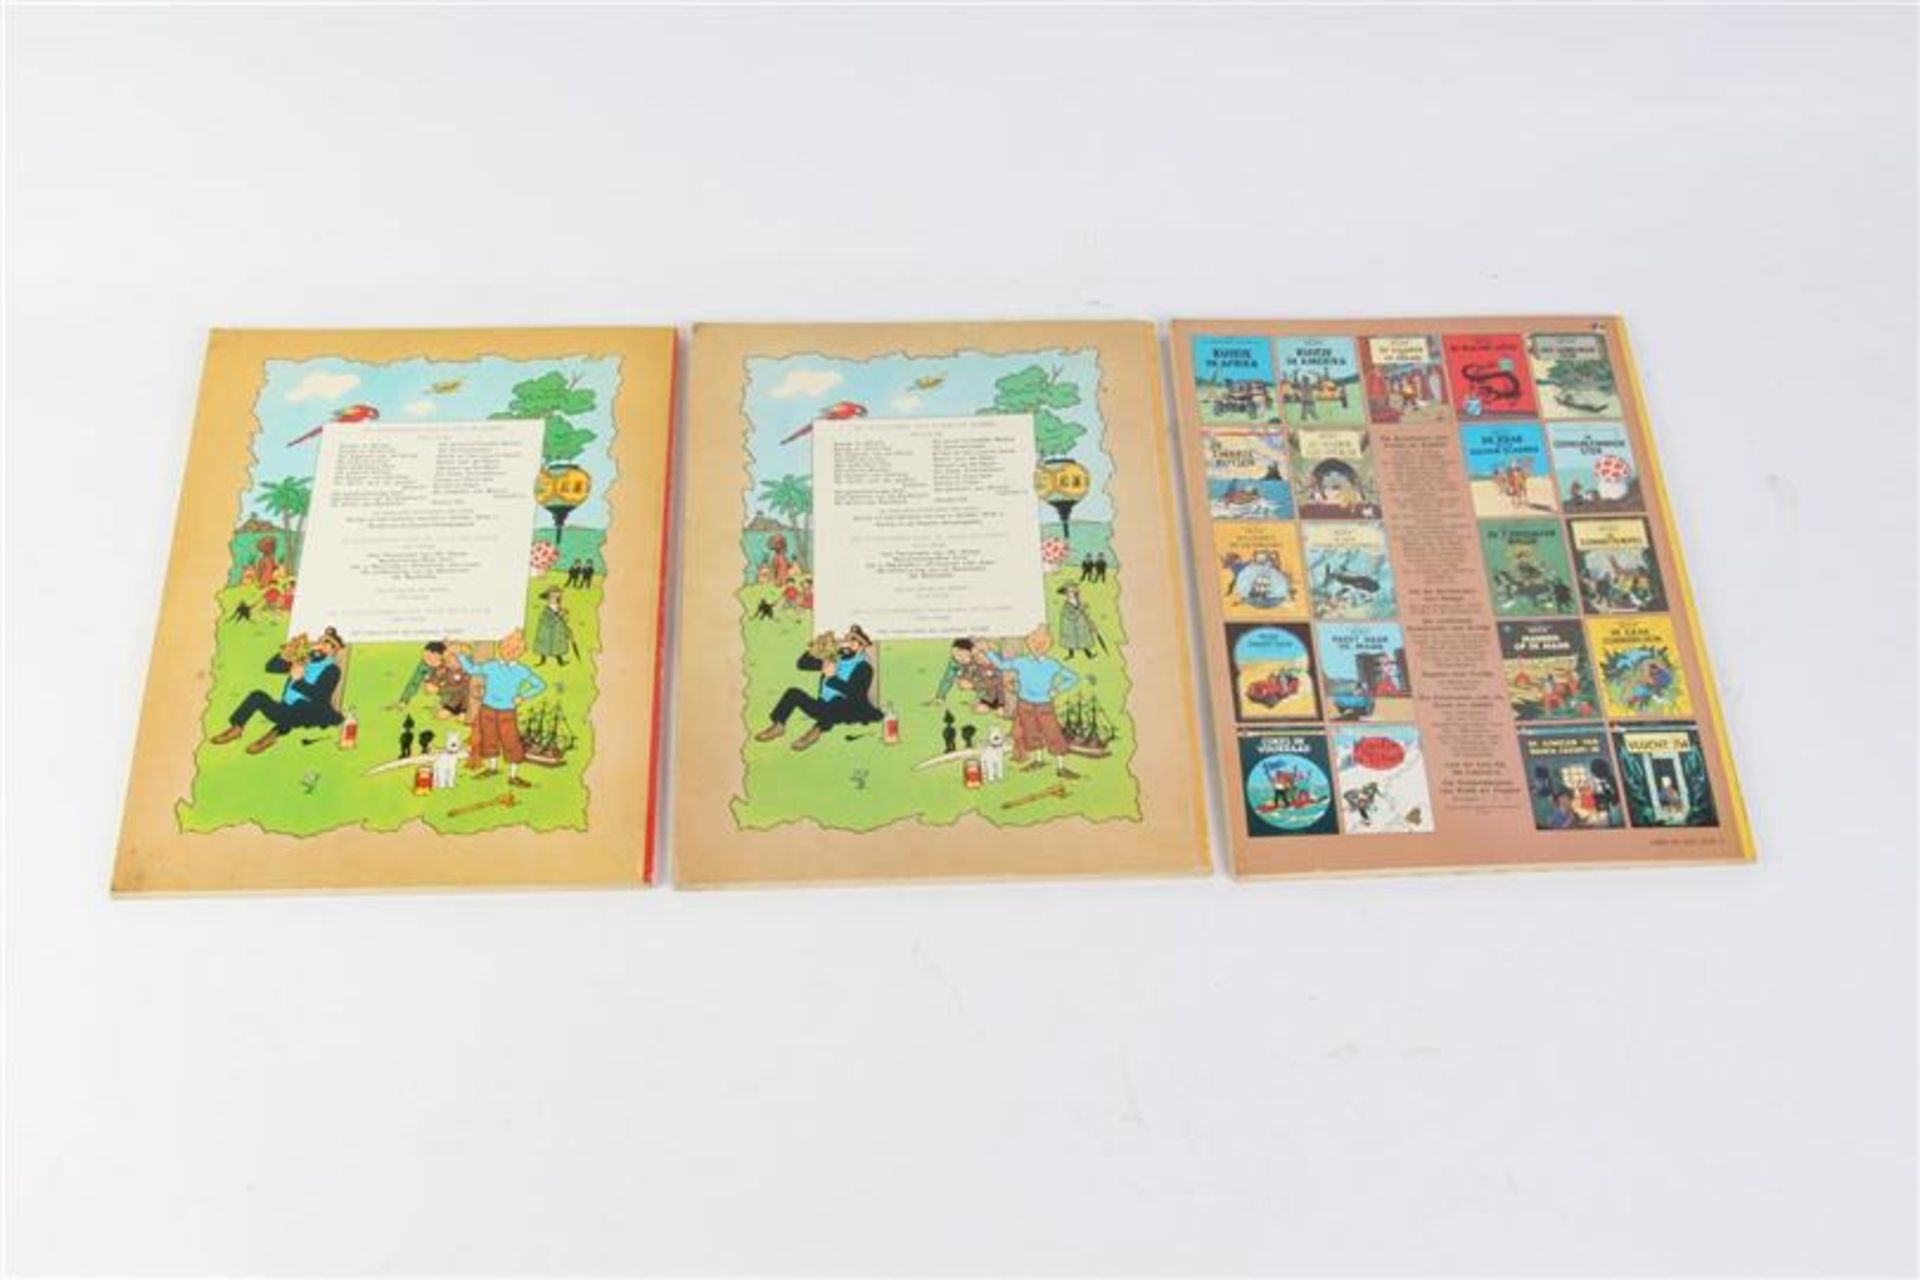 De avonturen van Kuifje, Hergé, uitgeverij Casterman, 7 hardcovers en drie softcovers. - Bild 6 aus 17